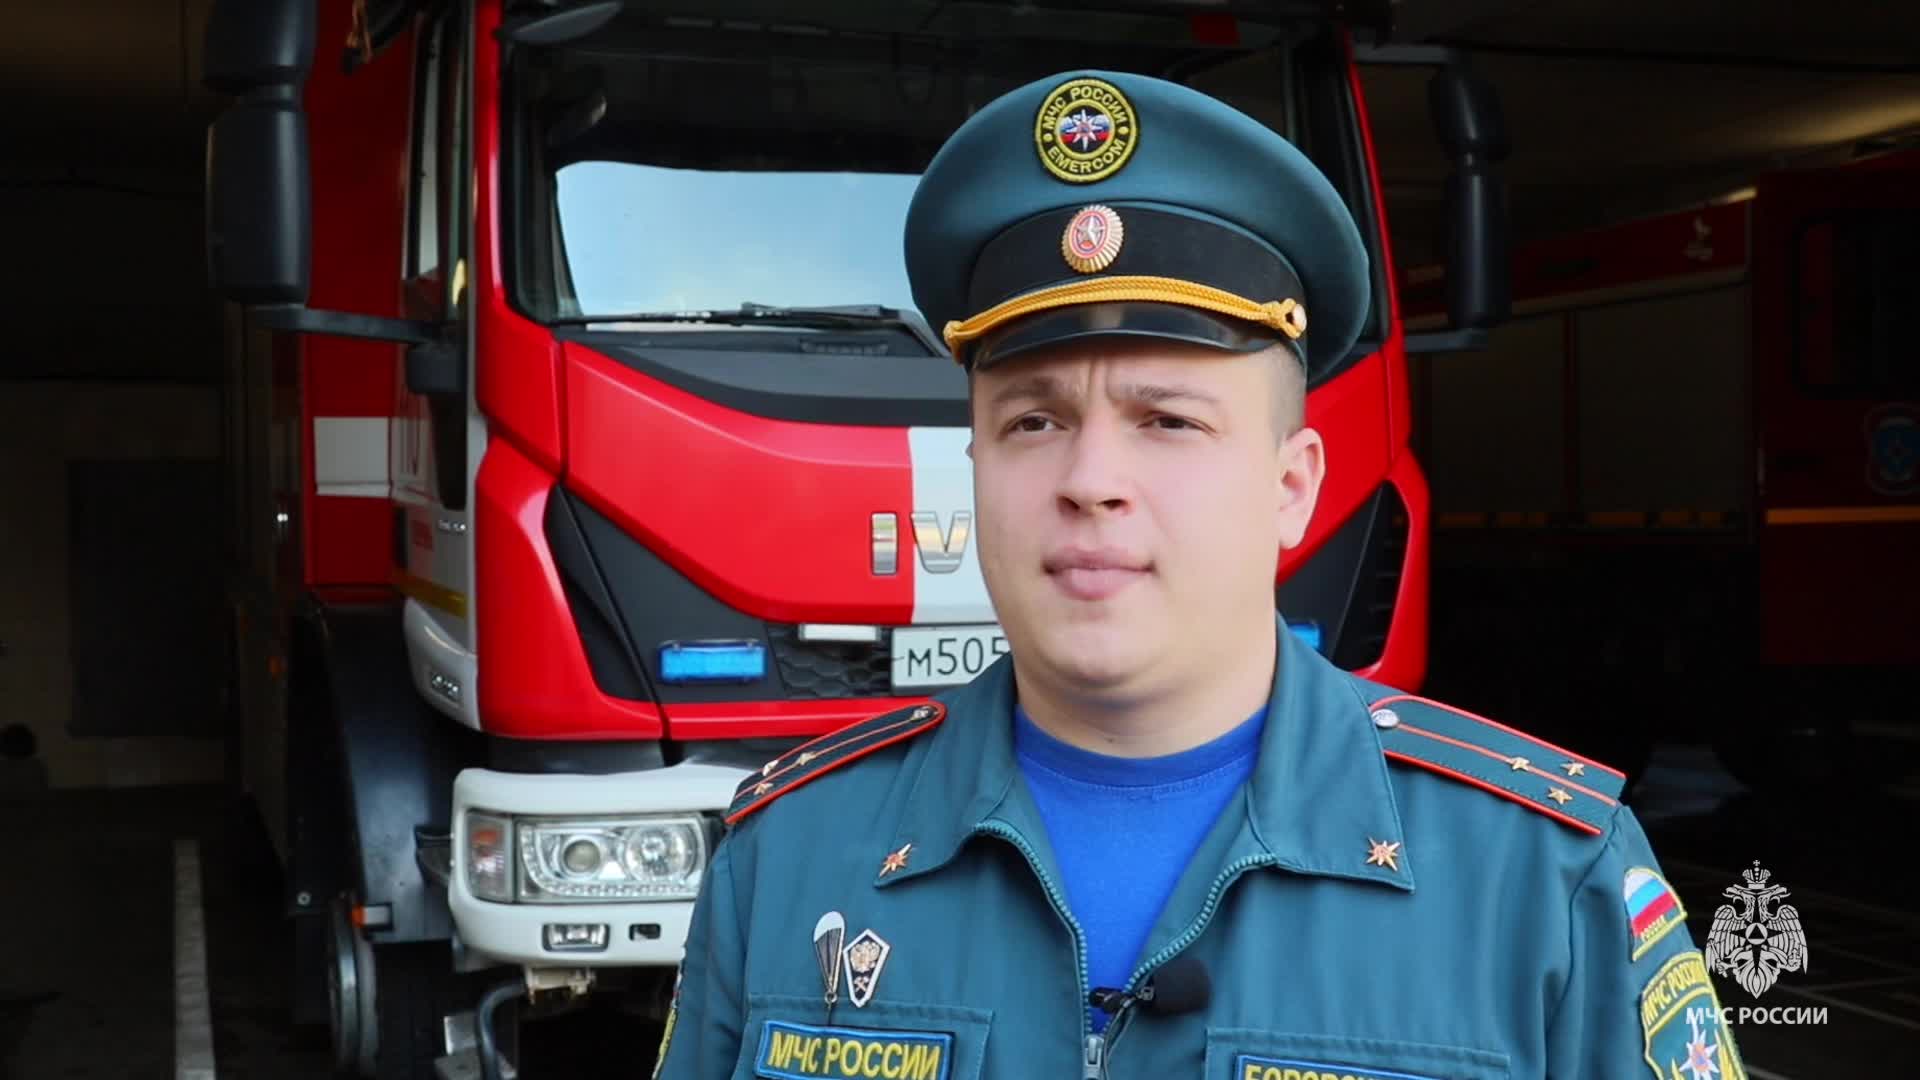 Пожары и утопления в Пермском крае: статистика и предупреждение